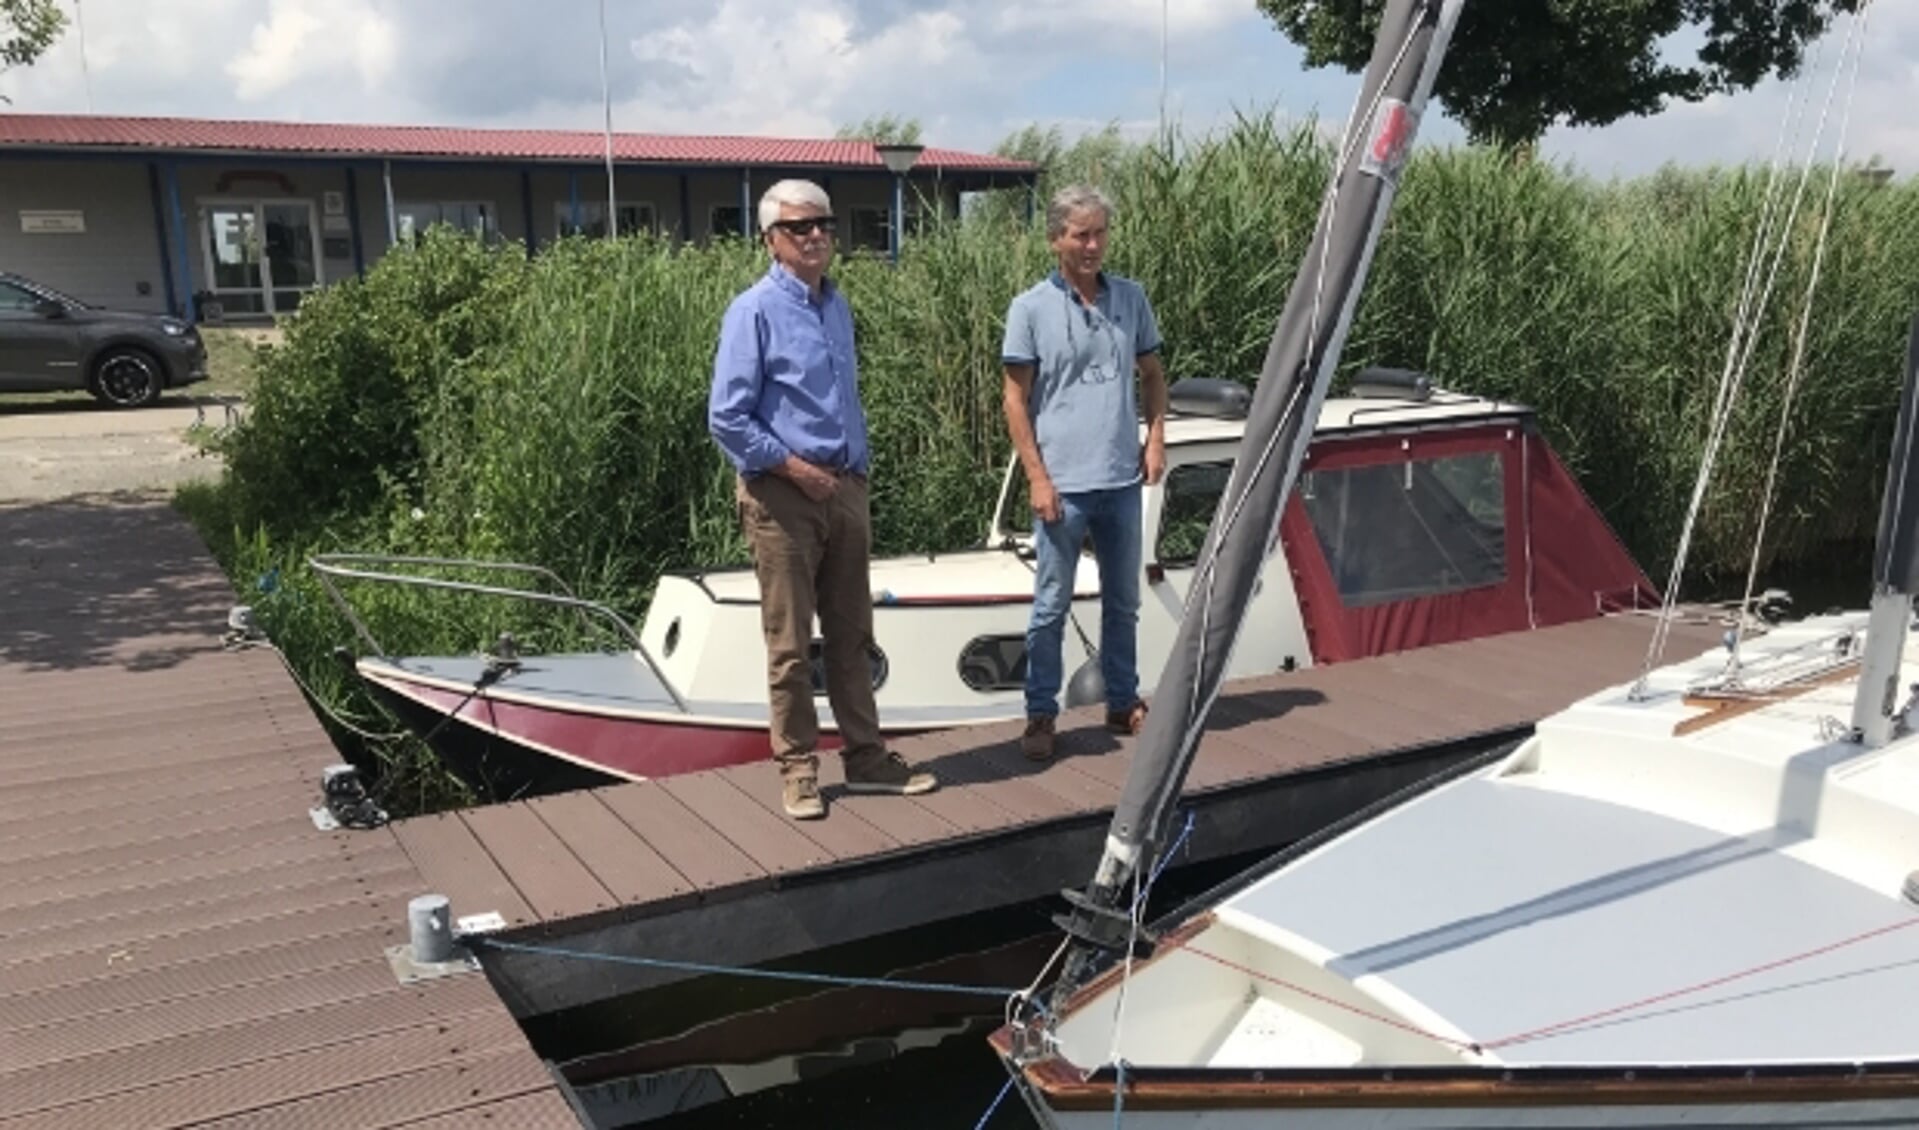 Voorzitter Wiert Omta (links) en secretaris Martin van Leussen vrezen voor de toekomst van Watersportvereniging Ermelo als de ambitieuze plannen voor Strand Horst worden doorgezet. (foto: Marco Jansen)